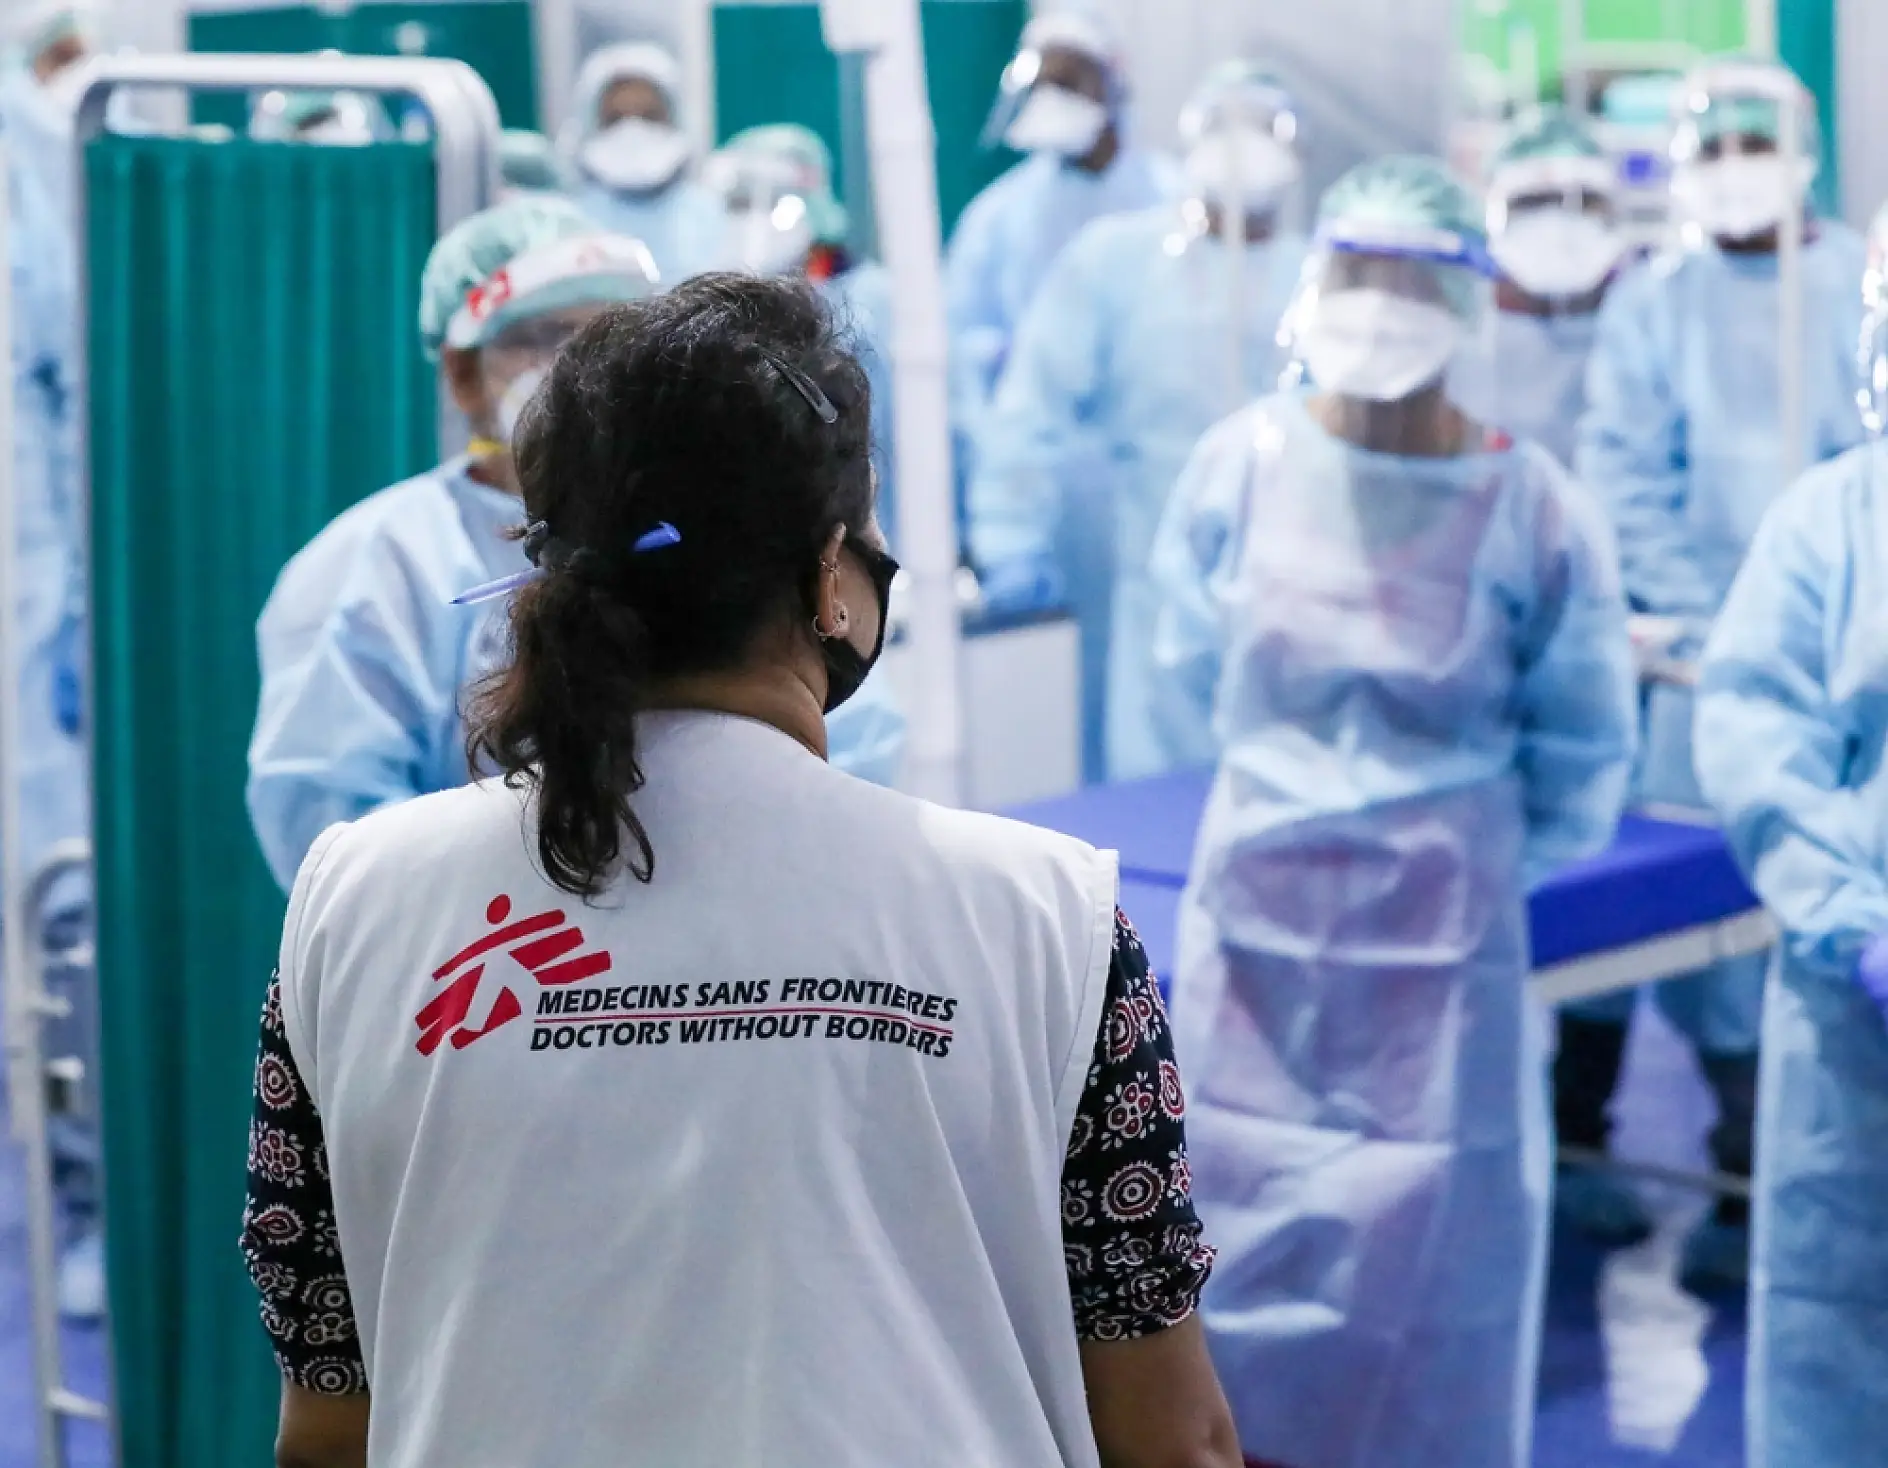 MSF için temel önceliklerden birisi sağlık çalışanlarının güvenliği. Bu nedenle bütün personel güvenlik ve emniyet açısından katı protokollere uyuyor